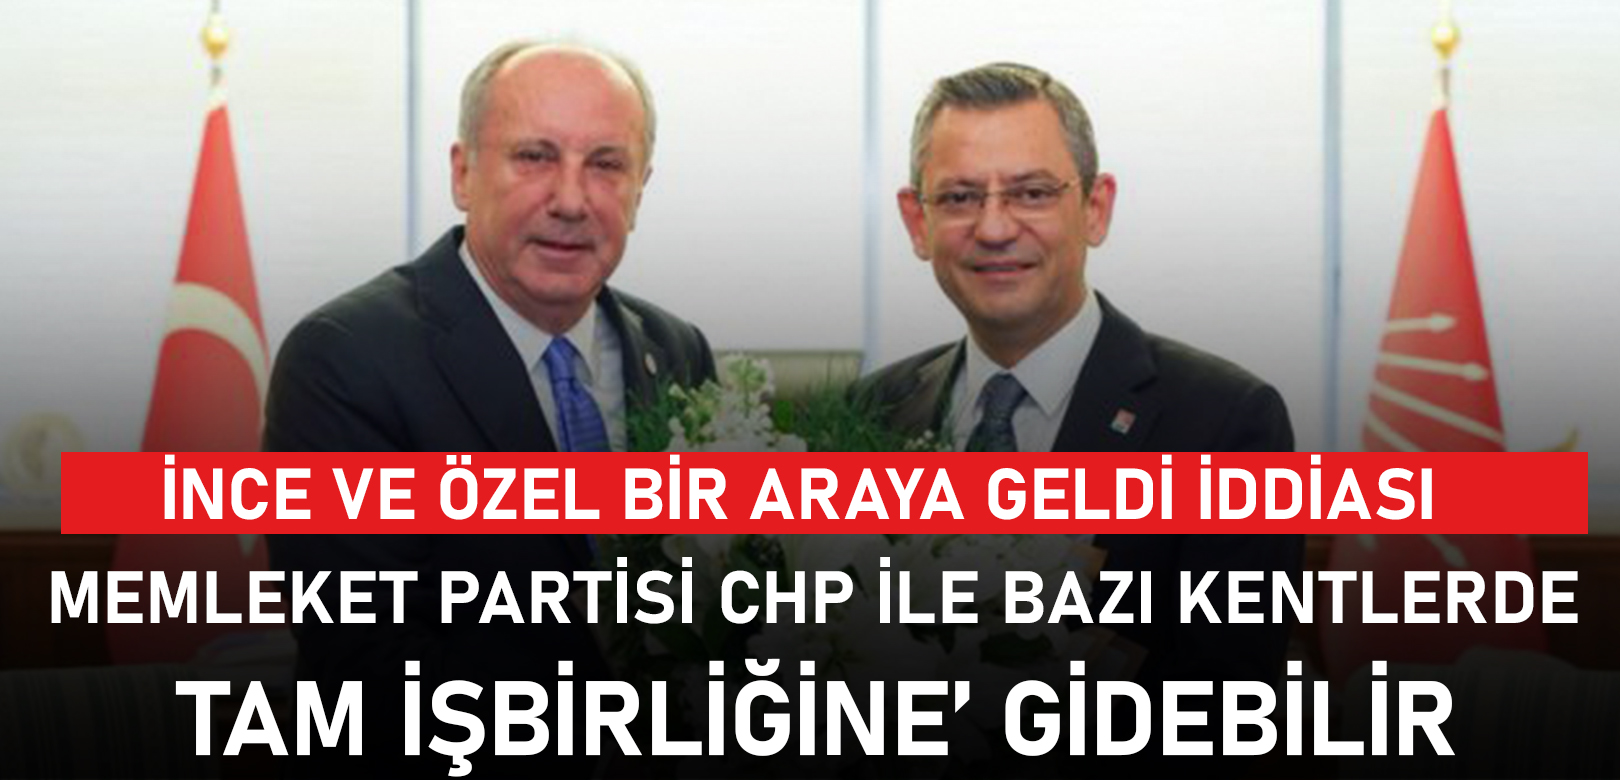 Memleket Partisi CHP ile bazı kentlerde ‘tam işbirliğine’ gidebilir iddiası